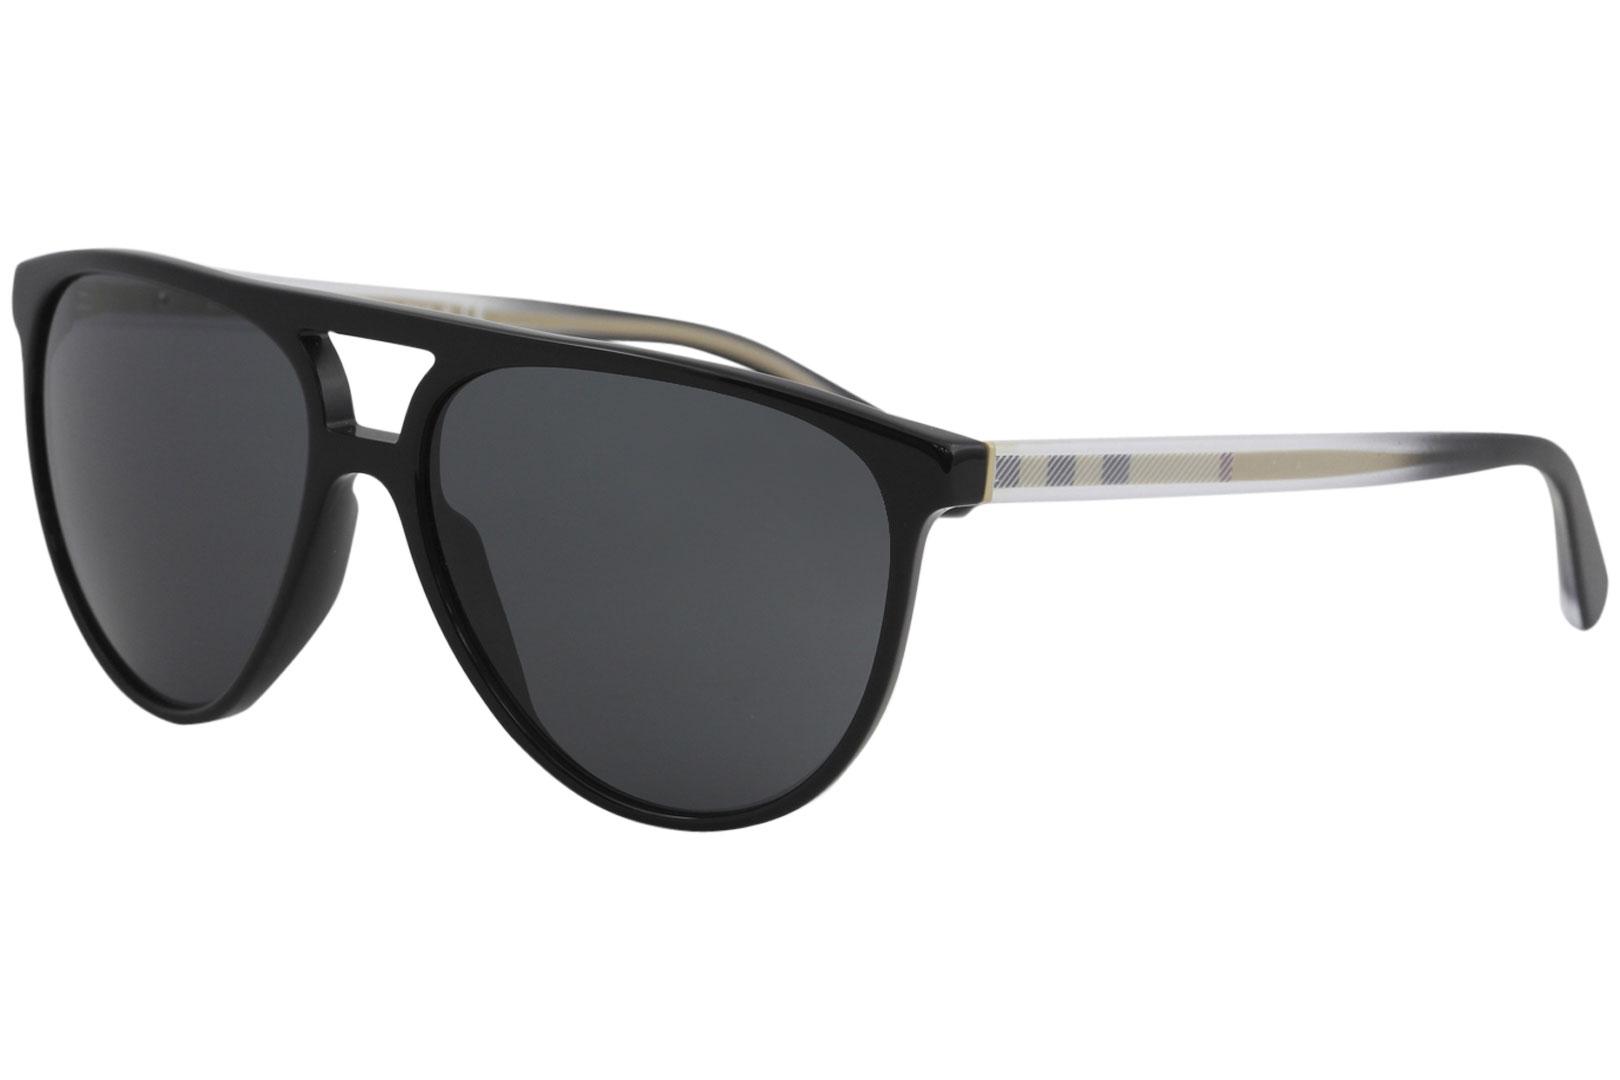 Burberry Men's BE4254 BE/4254 Fashion Pilot Sunglasses - Black/Grey   3001/87 - Lens 58 Bridge 15 B 50.2 ED 65.4 Temple 145mm